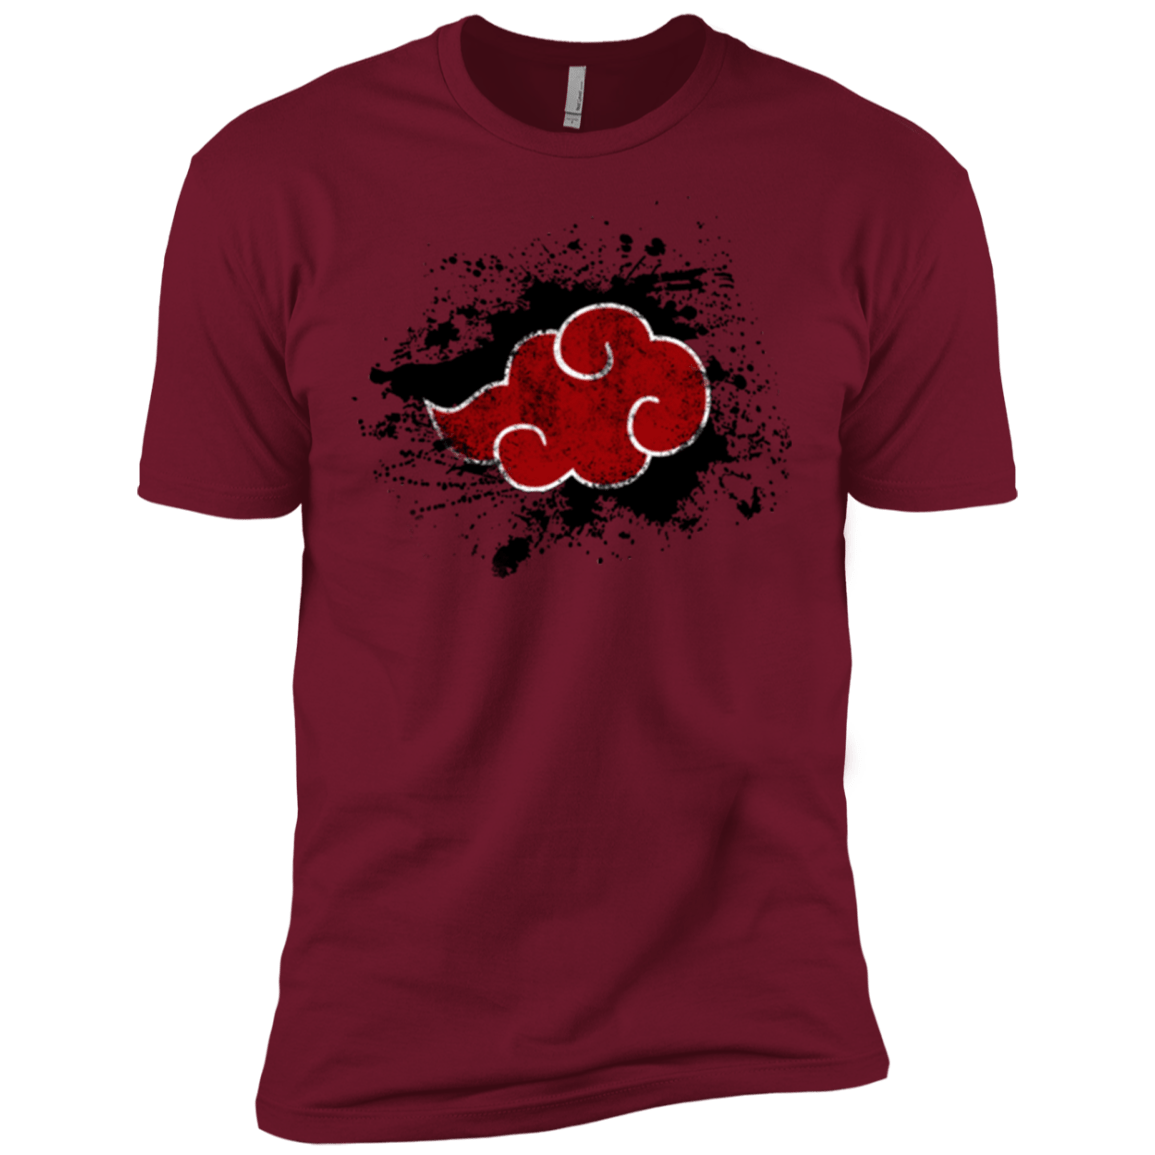 T-Shirts Cardinal / X-Small Hidden Organization Men's Premium T-Shirt